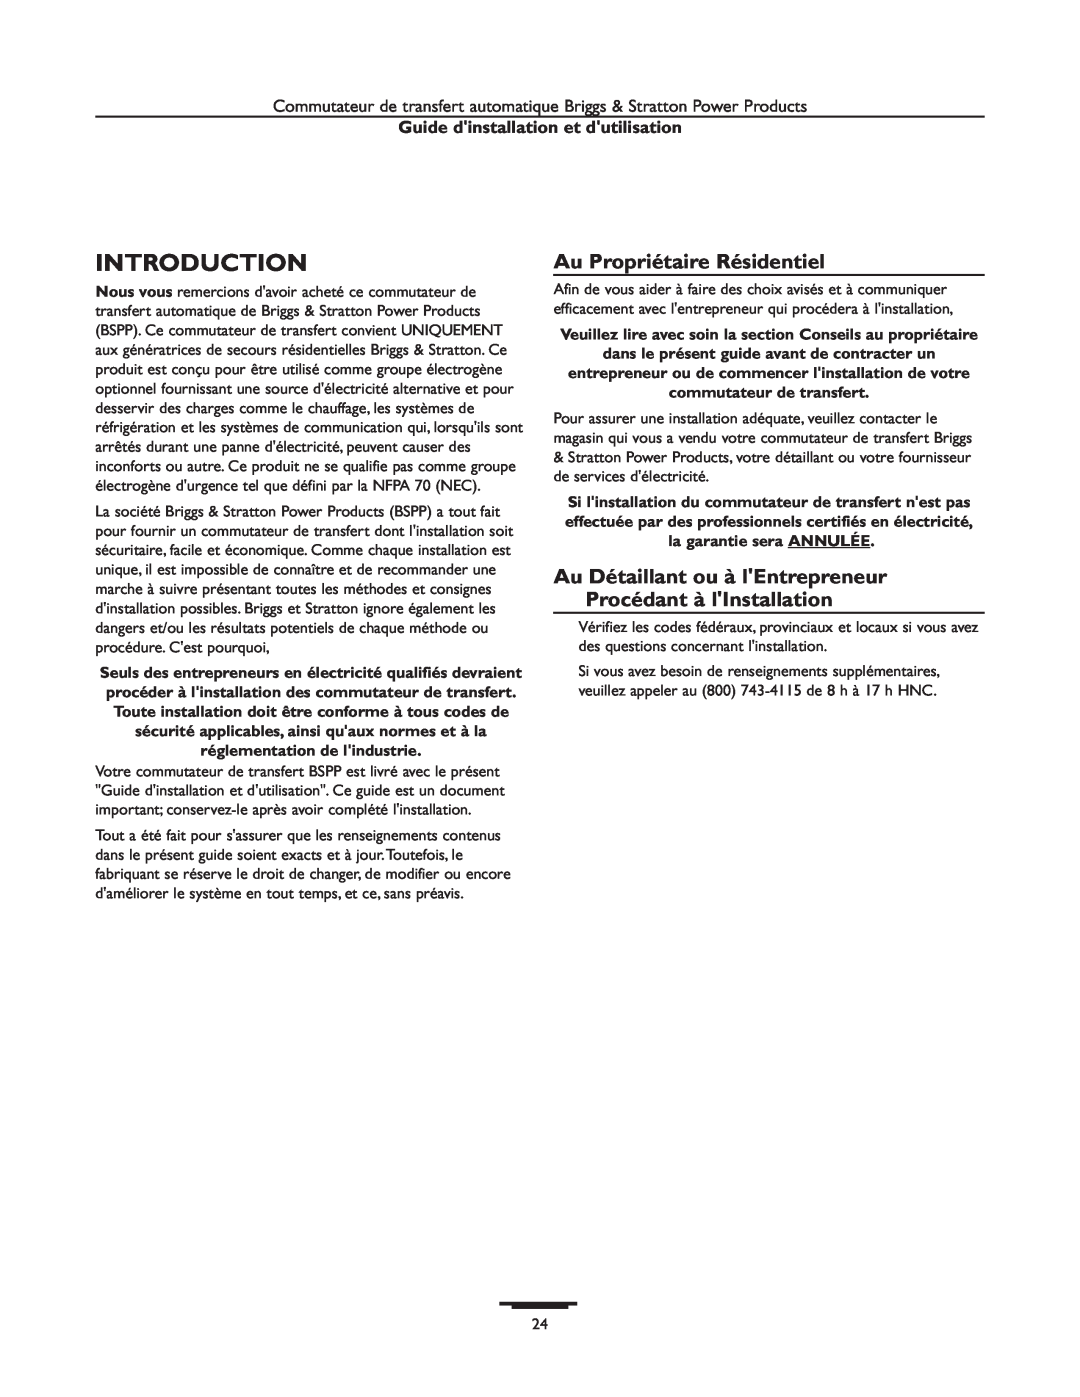 Briggs & Stratton 01928-1, 01814-1, 01929-1 Introduction, Au Propriétaire Résidentiel, Guide dinstallation et dutilisation 